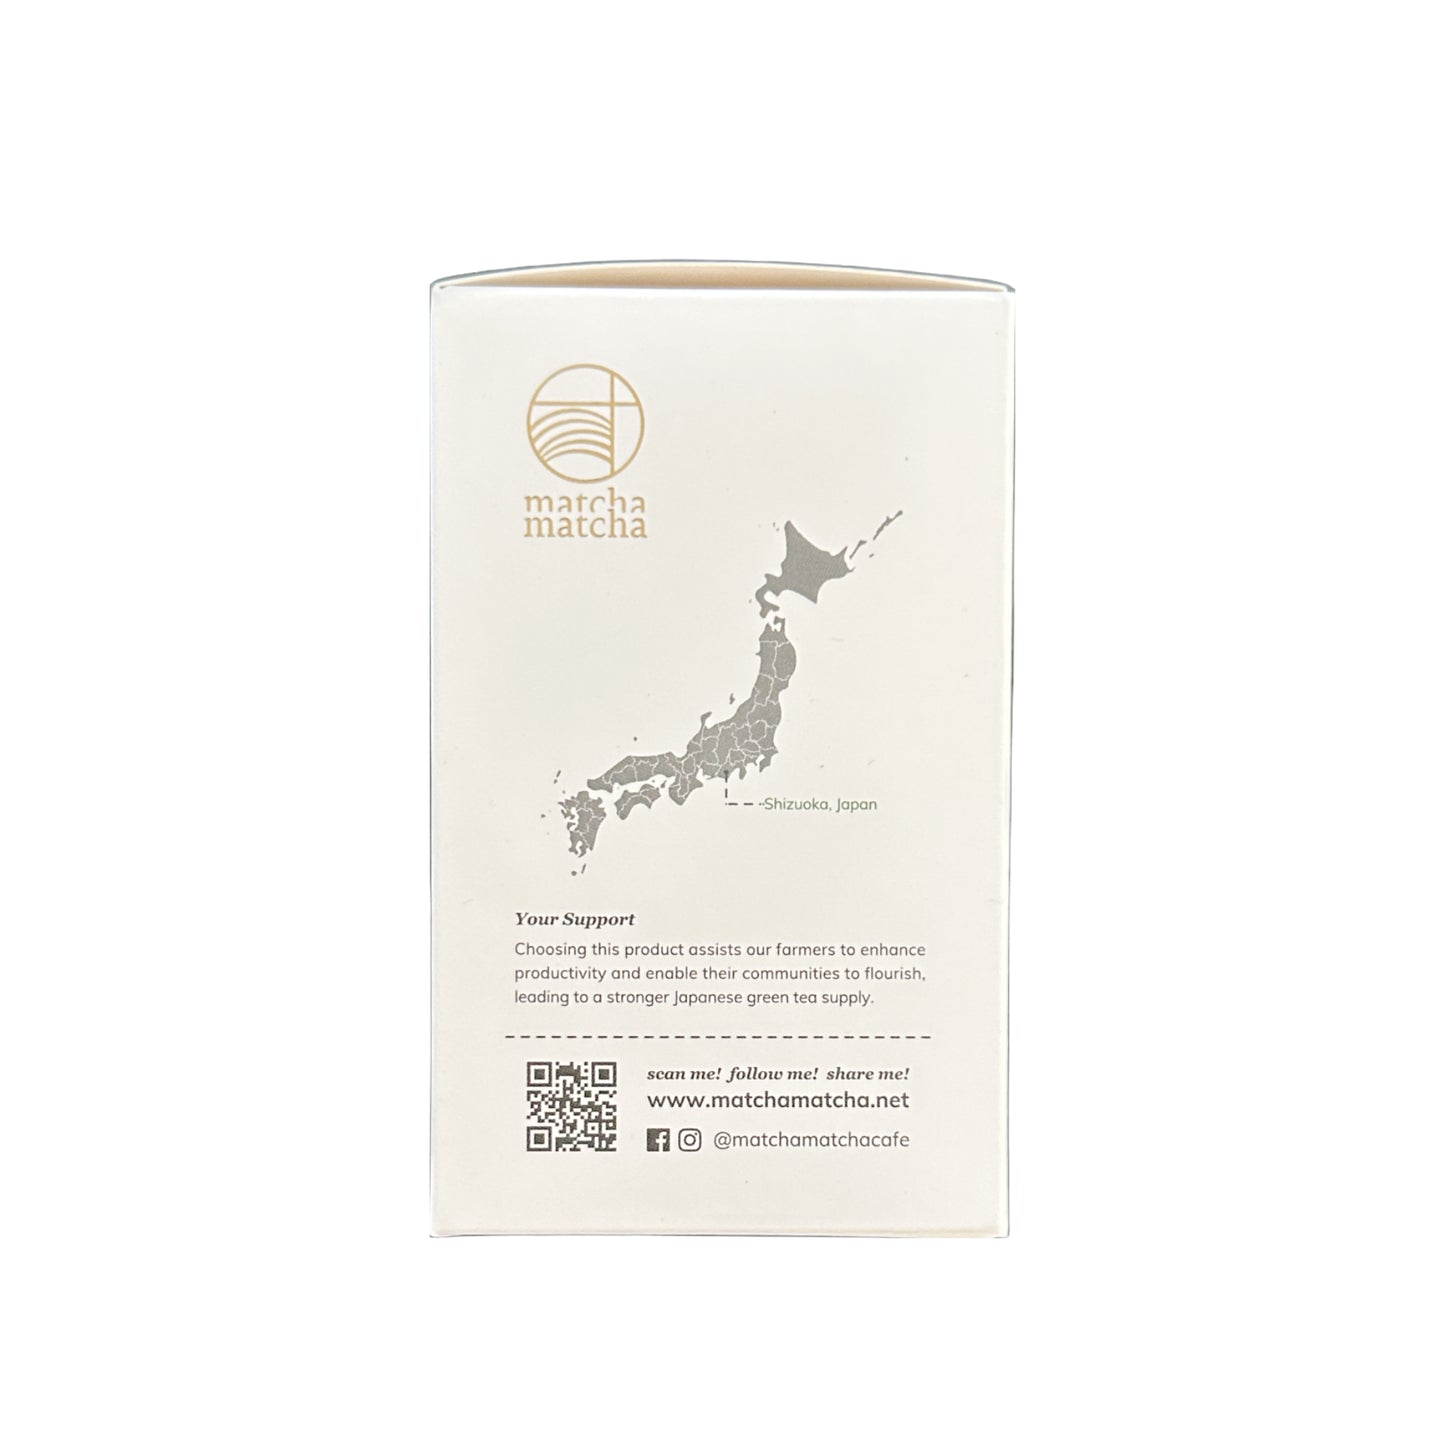 Strawberry Hojicha Tea Bags（3g x 8pc）